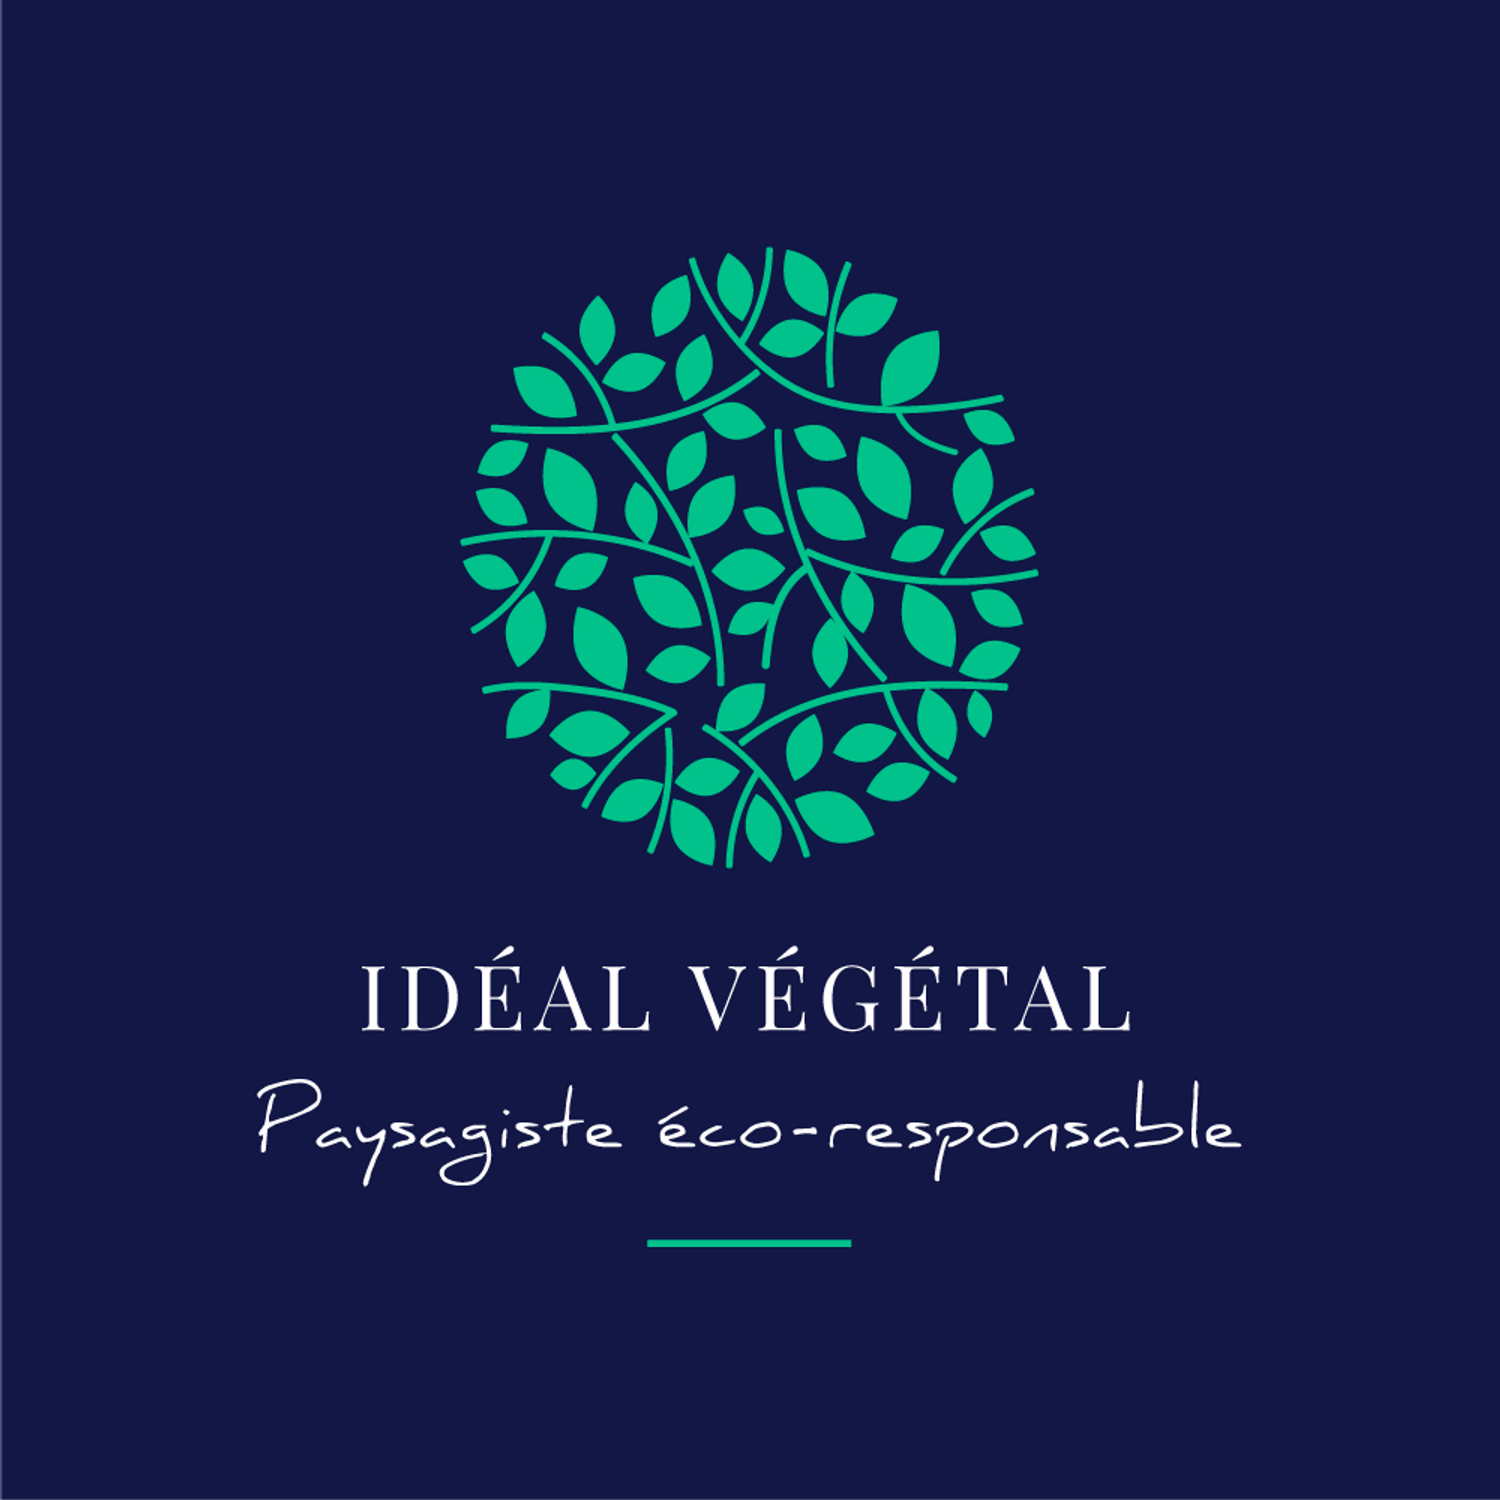 Ideal-vegetal-ecoresponsable